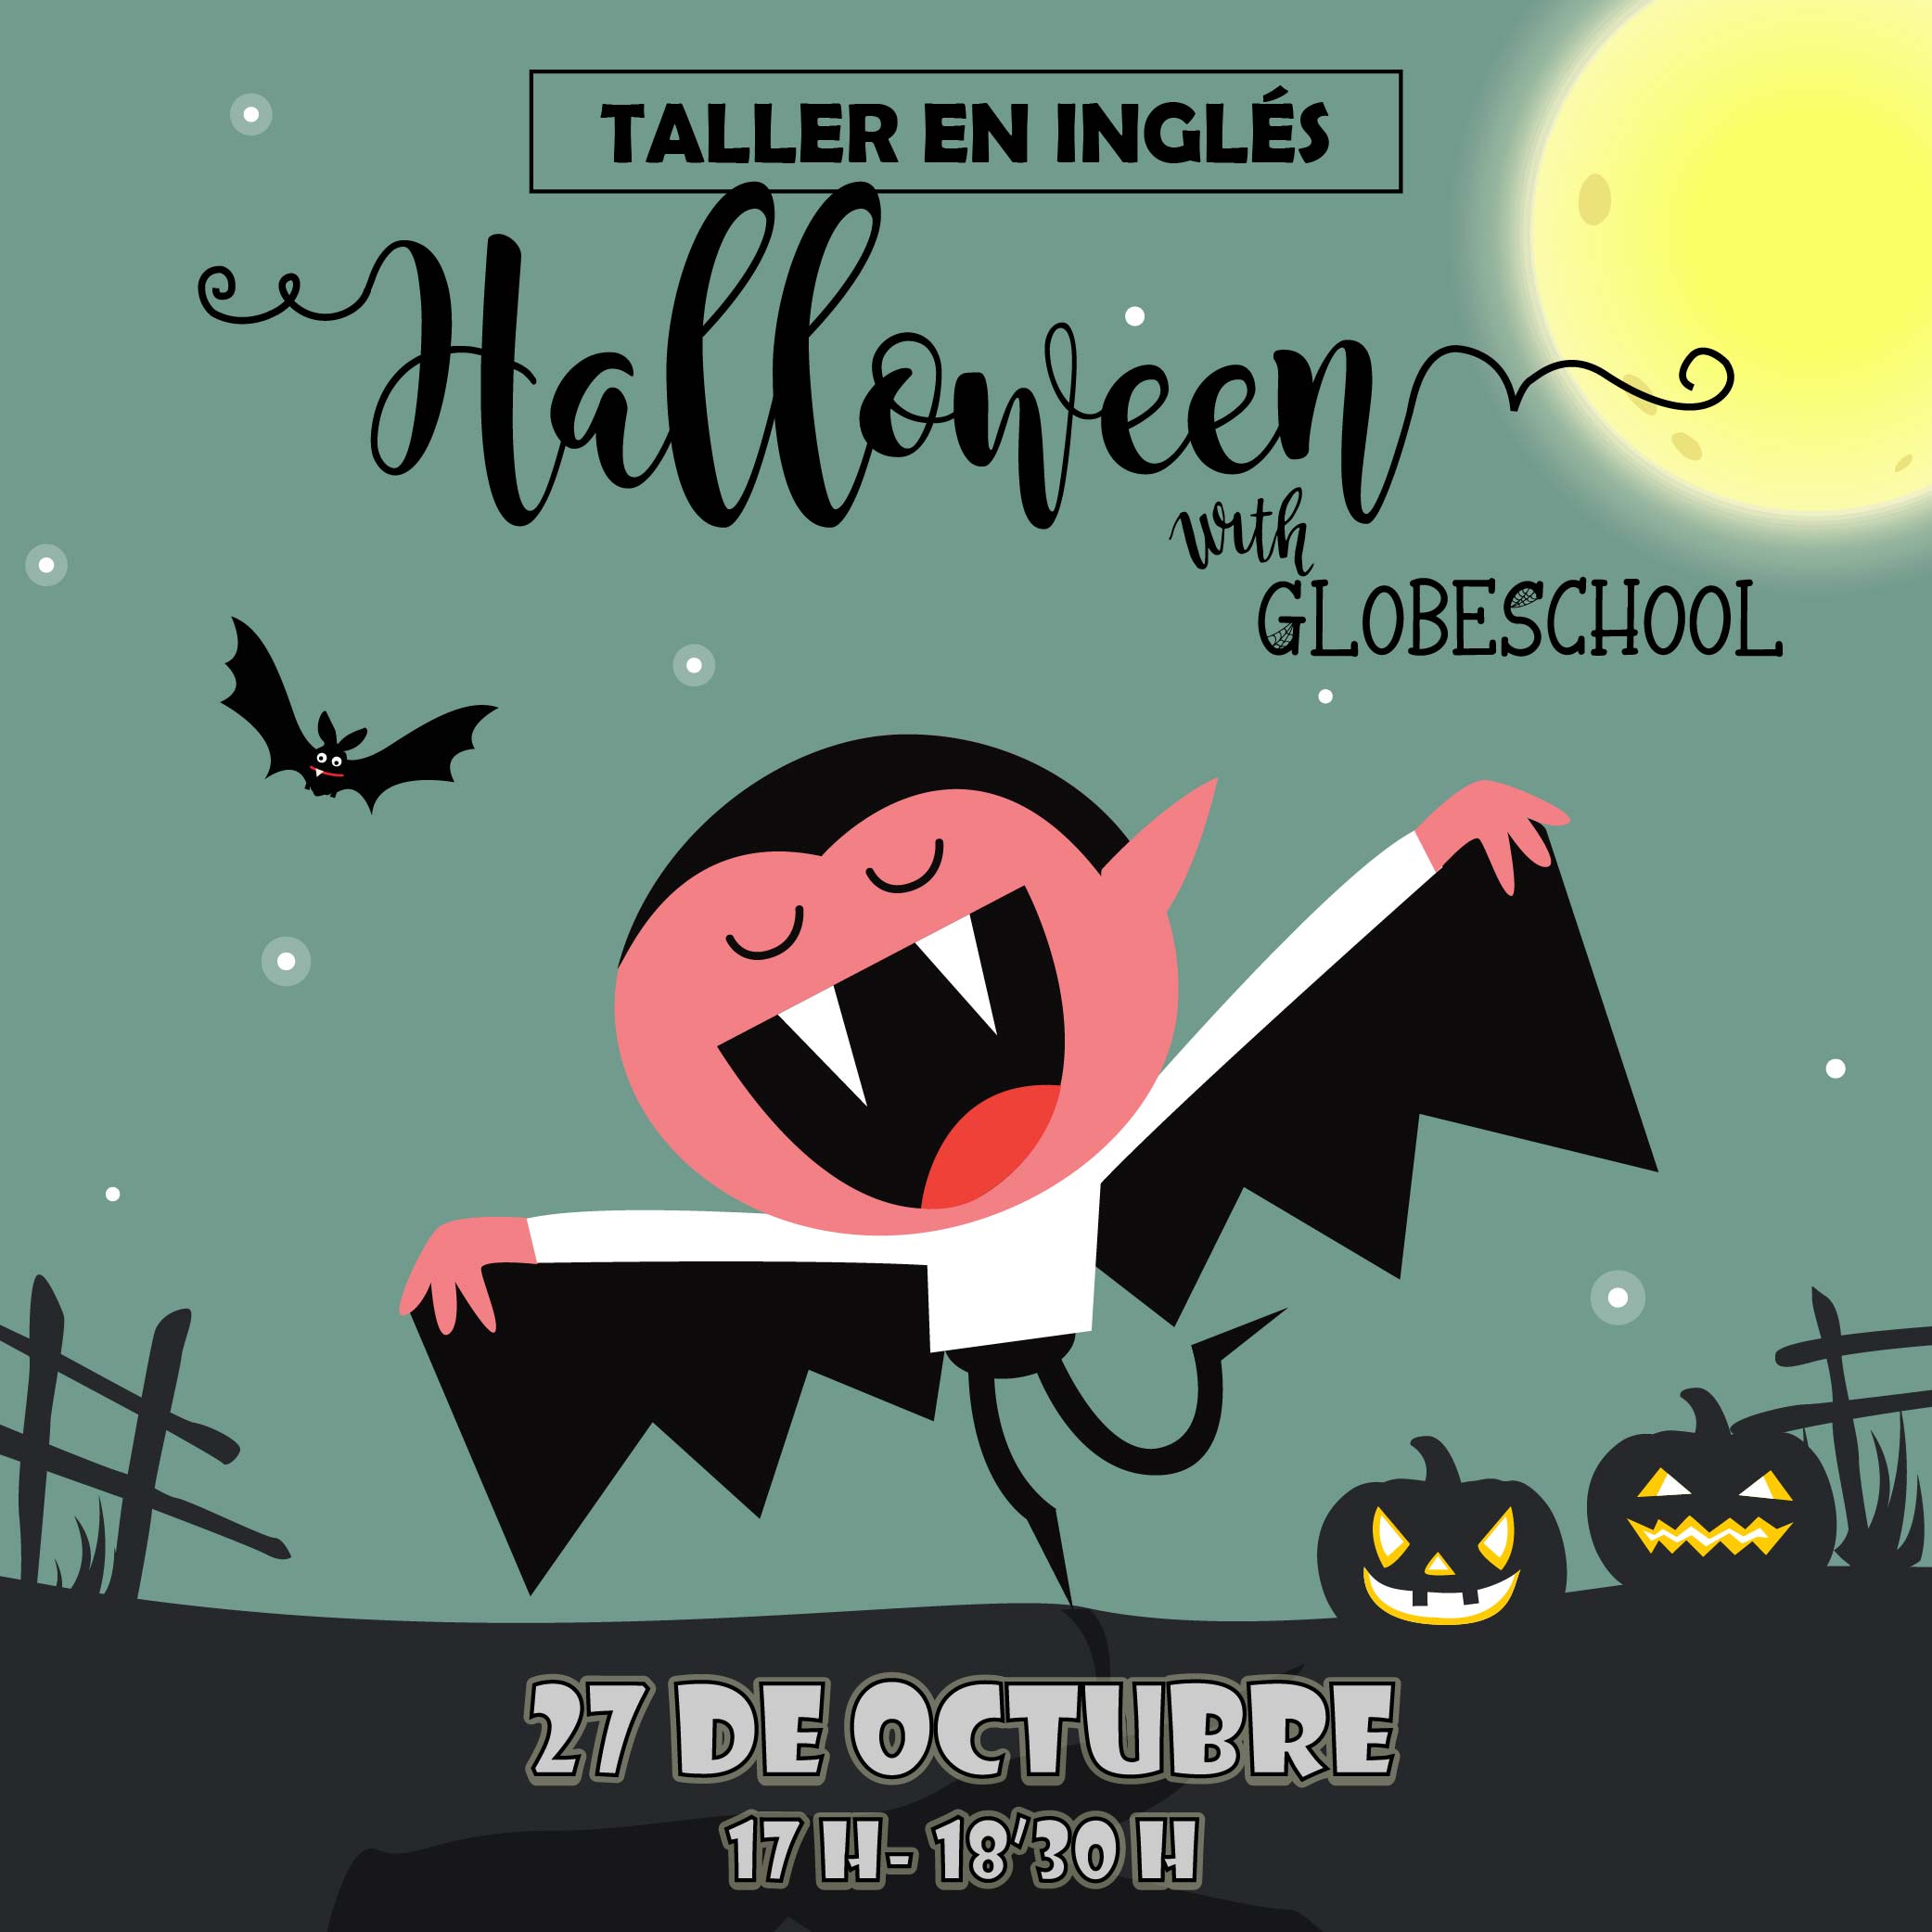 Taller en inglés de Halloween